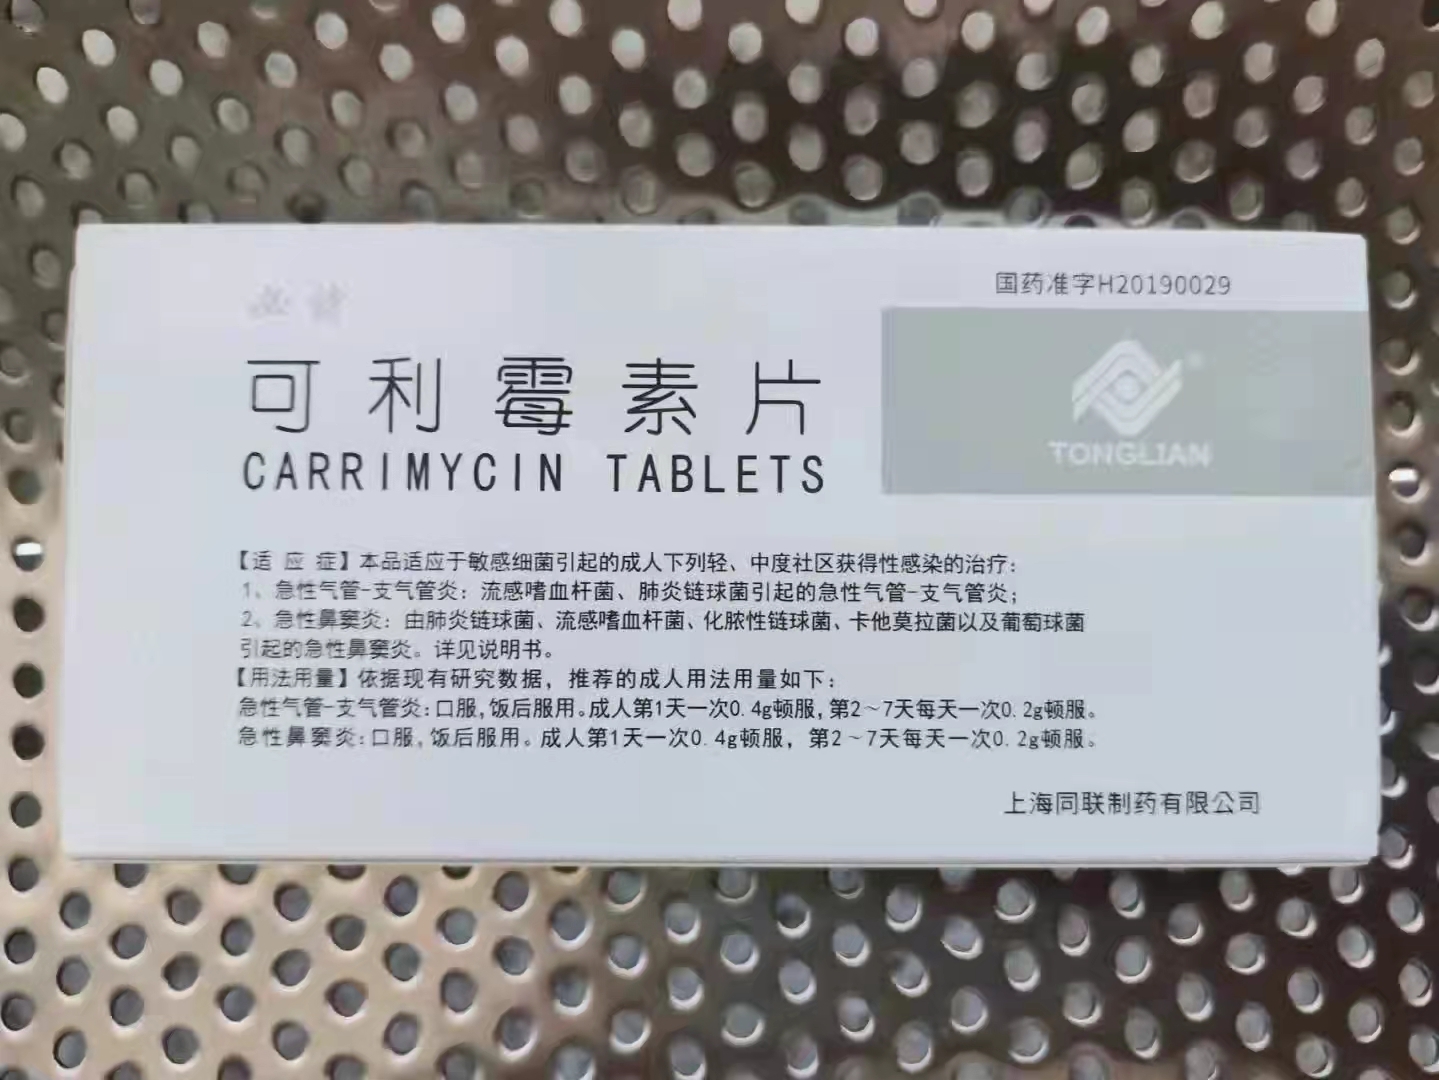  CARRIMYCIN  TABLETS